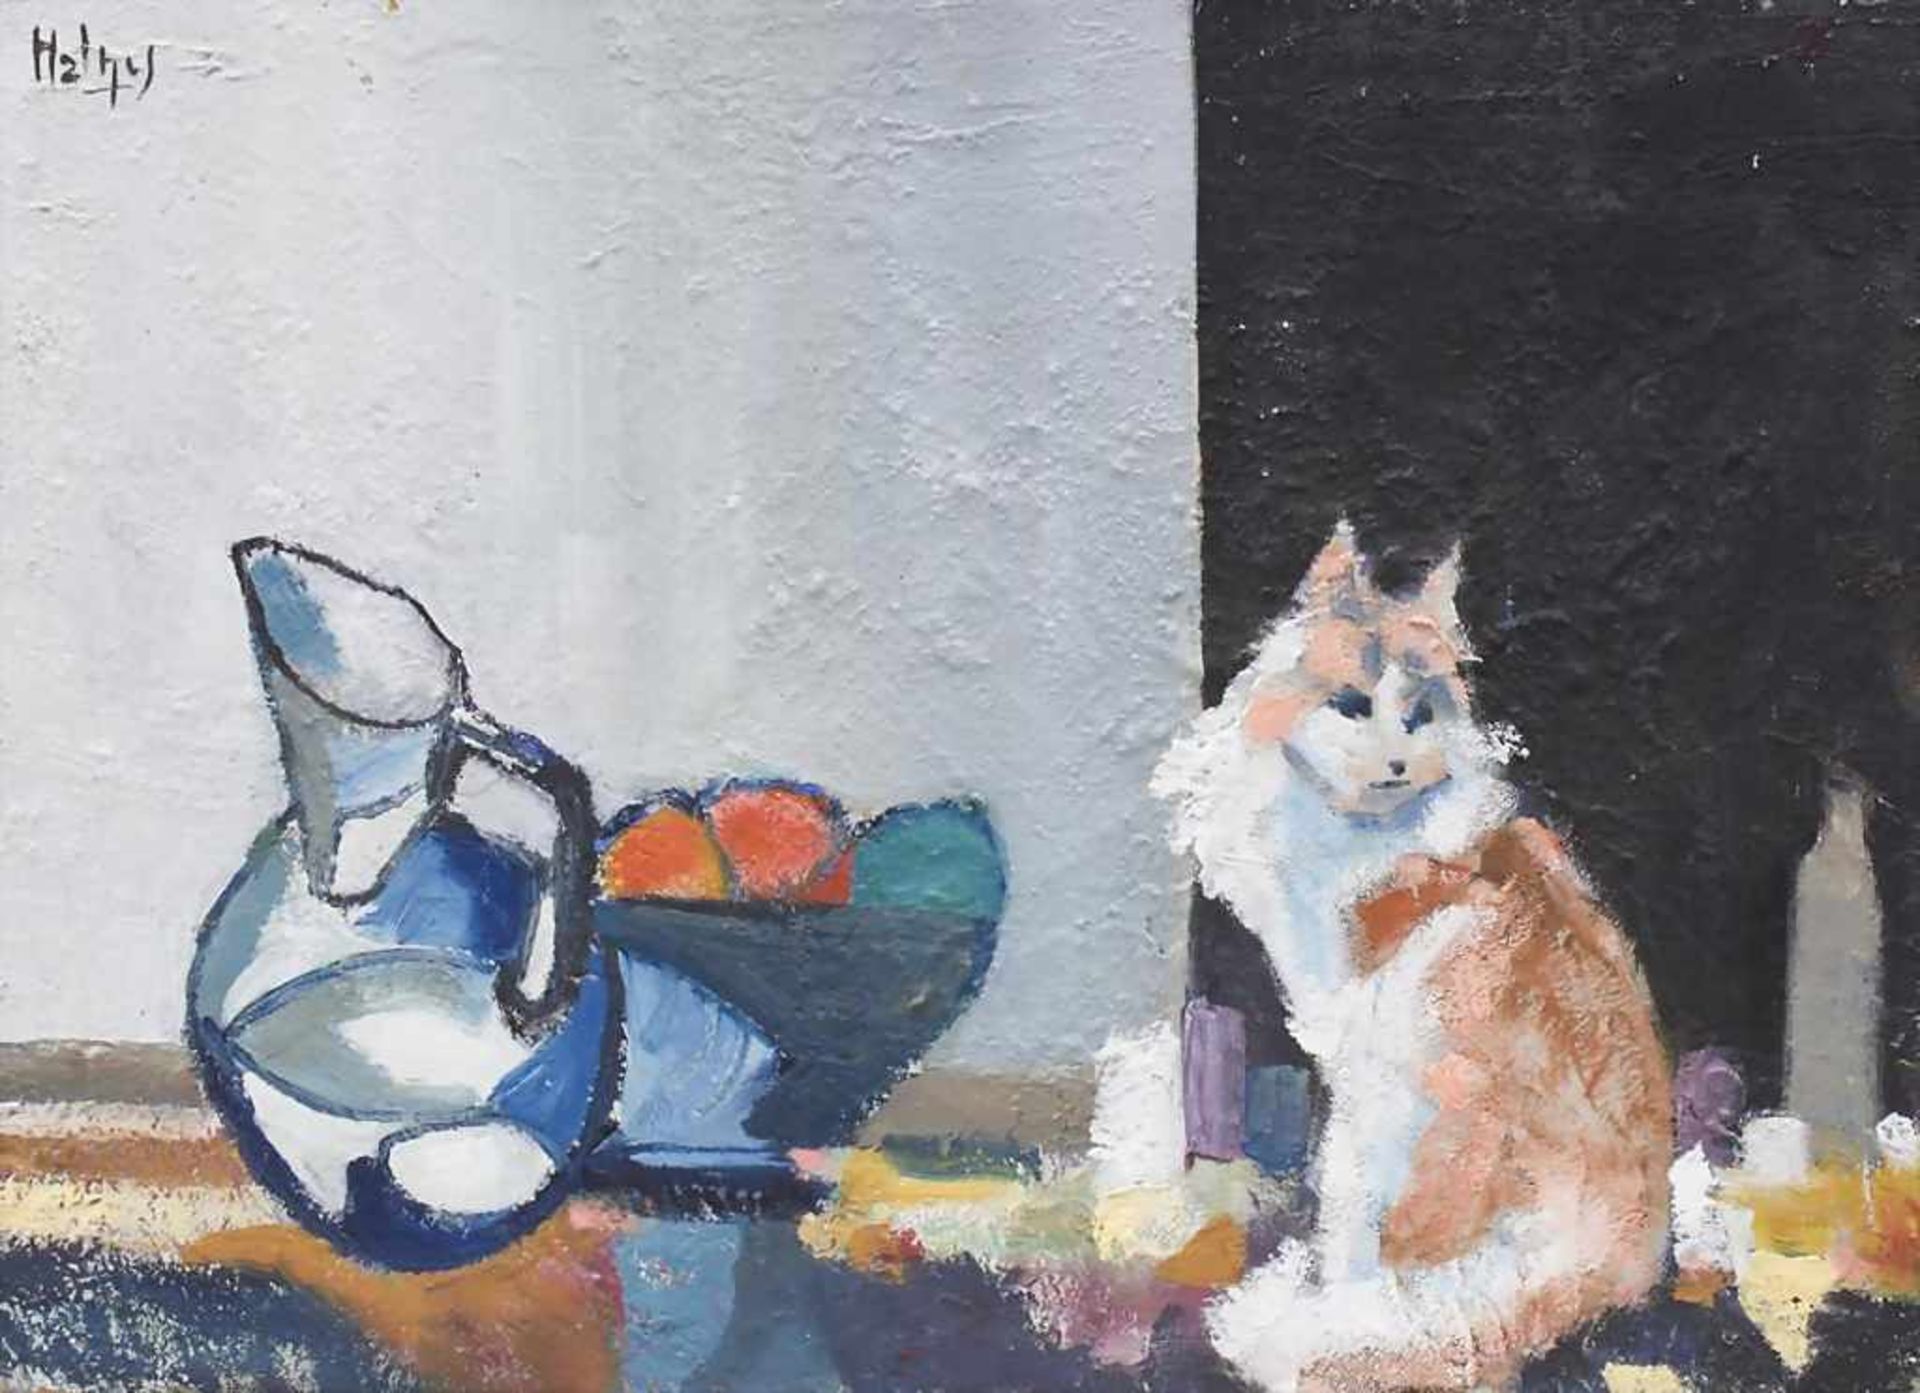 Stillleben mit Katze/Still Live With Cat, Helny, 20. Jh.Öl/Sand/Lw. Sitzende Katze neben einer